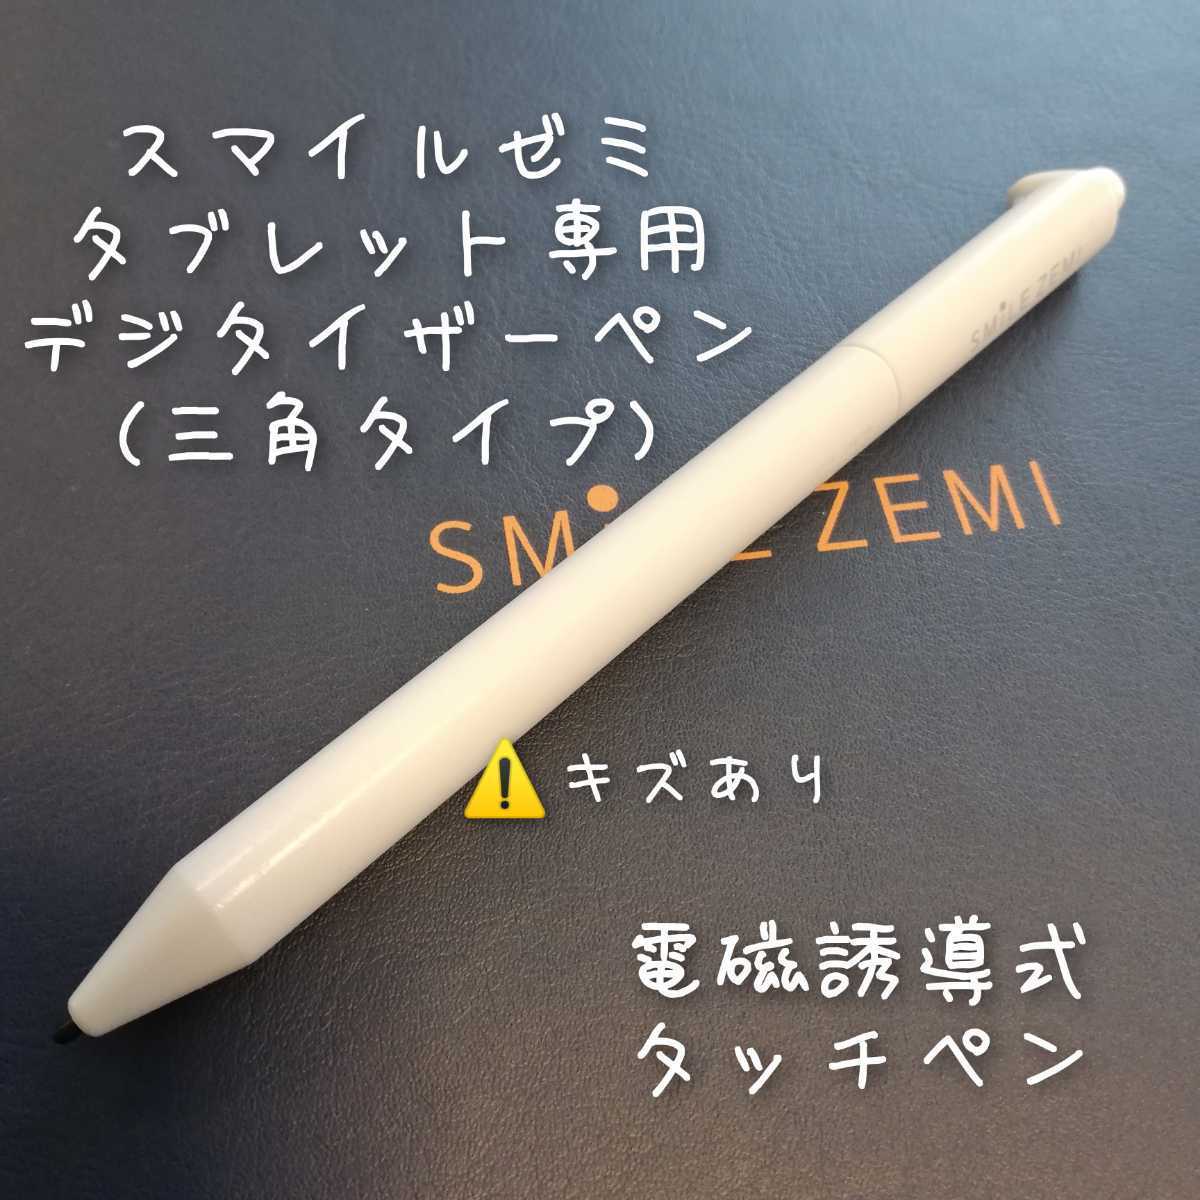 珍しい タッチペン ホワイト 白 スマイルゼミ 純正方式 電子 タブレットペン 知育